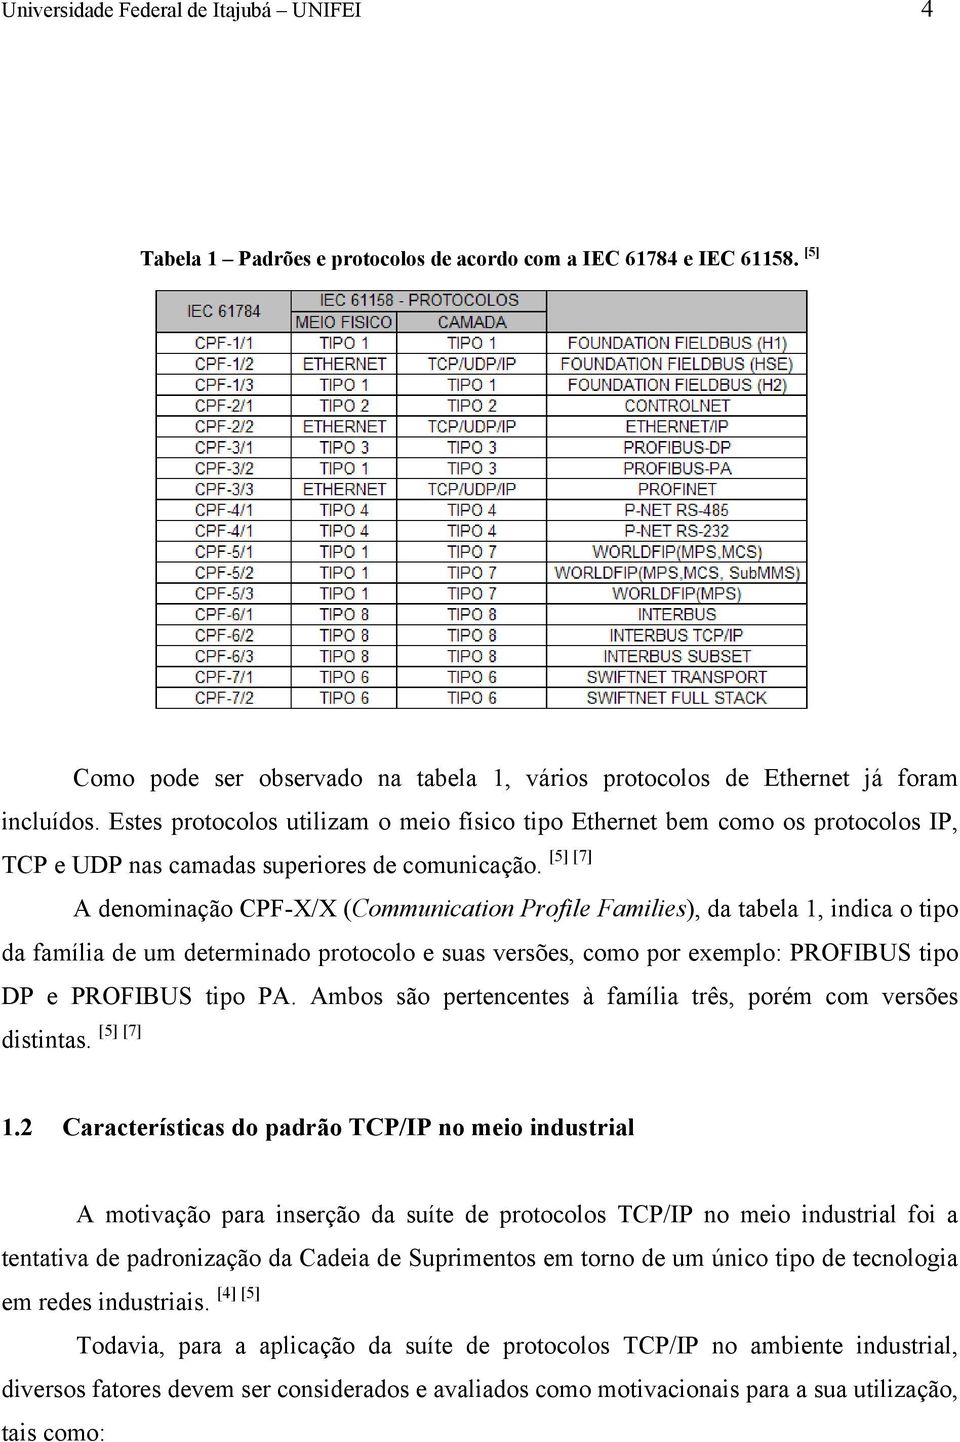 A denominação CPF-X/X (Communication Profile Families), da tabela 1, indica o tipo da família de um determinado protocolo e suas versões, como por exemplo: PROFIBUS tipo DP e PROFIBUS tipo PA.